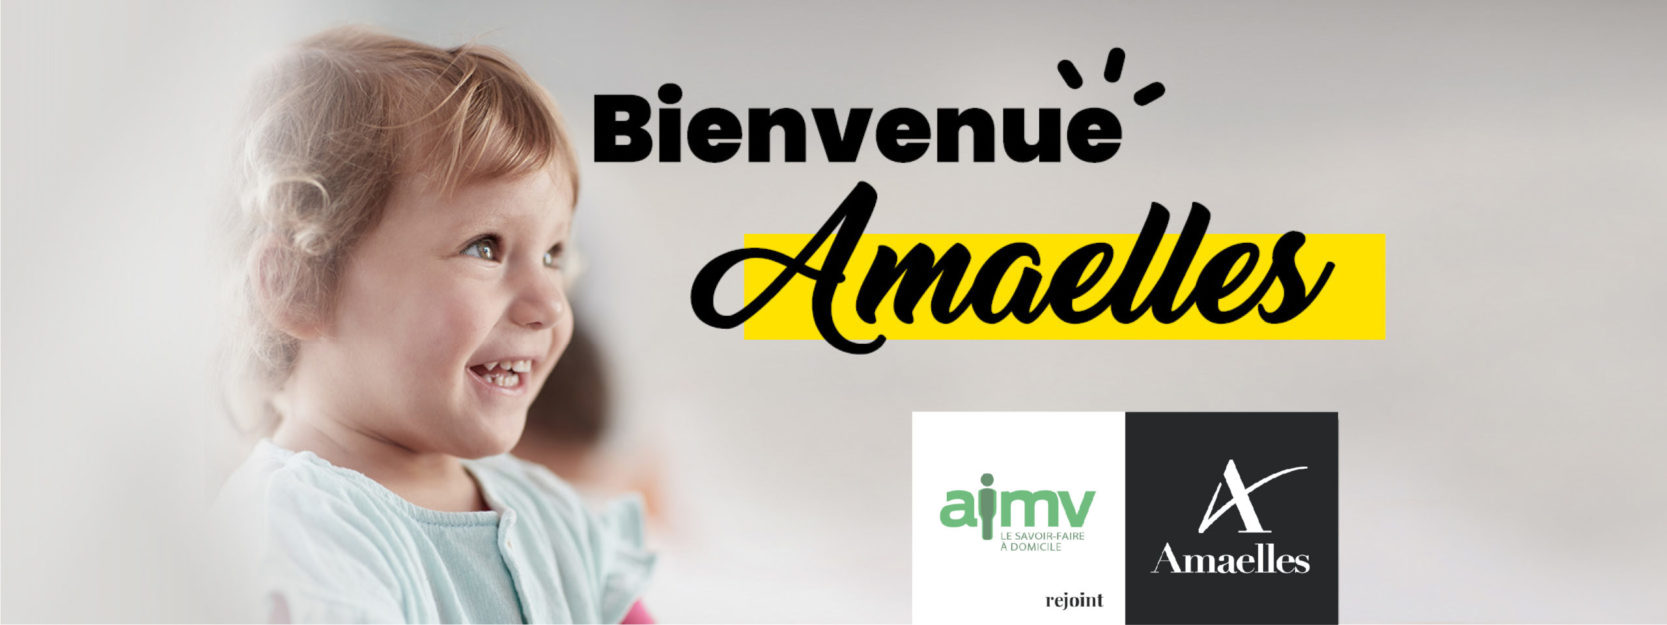 AIMV devient Amaelles